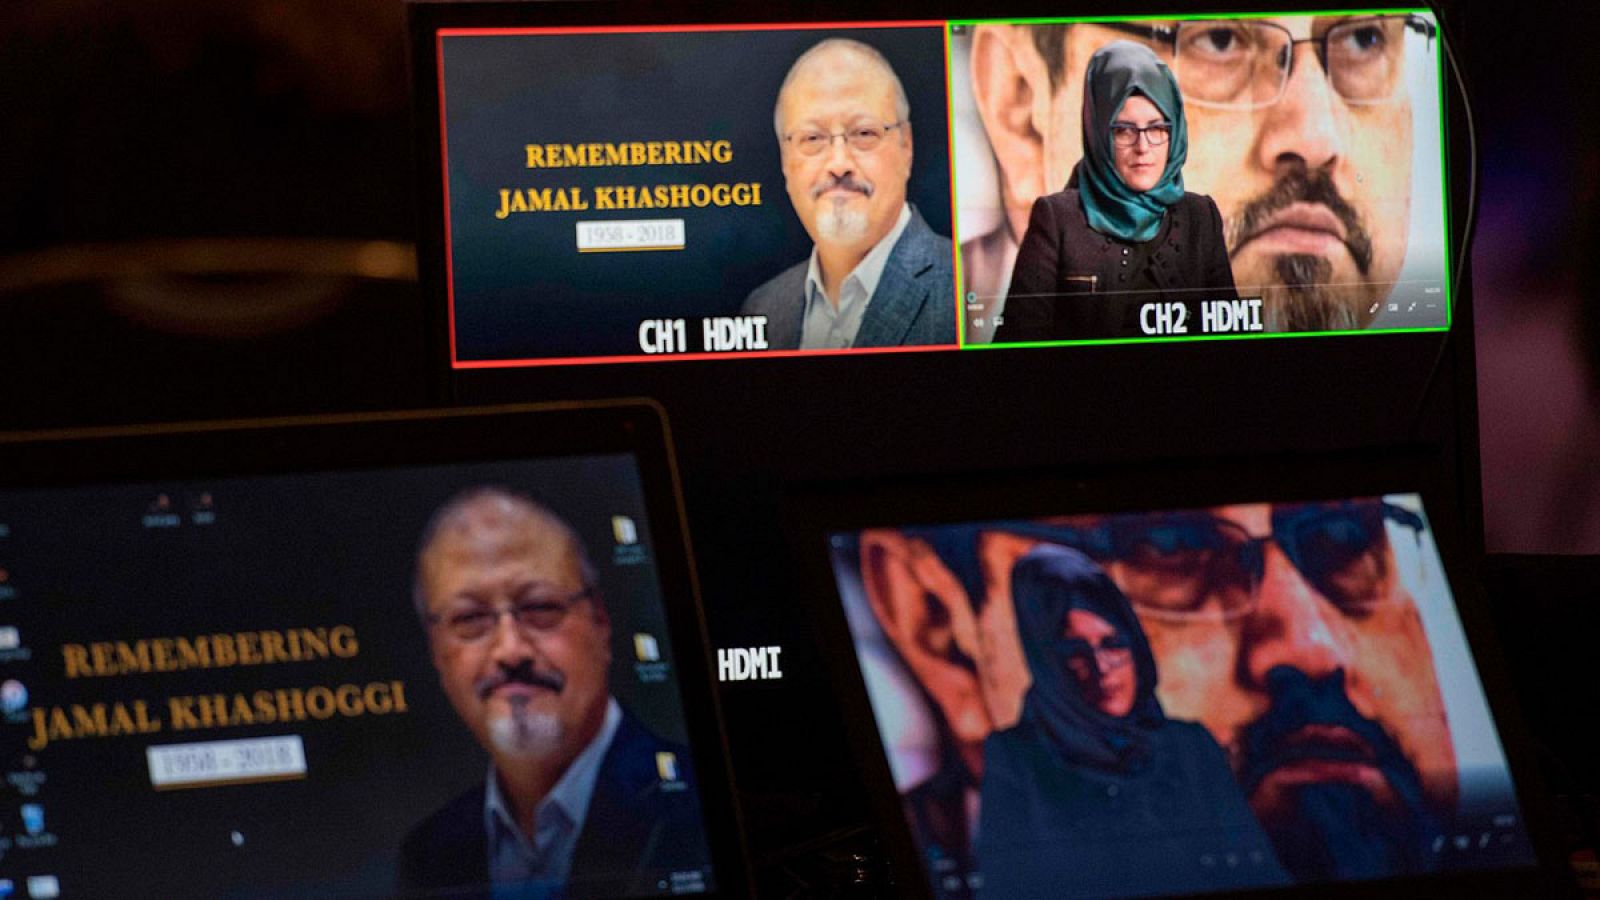 Hatice Cengiz, la novia del  periodista Jamal Khashoggi, asesinado en Turquia , durante una ceremonia de conmemoración